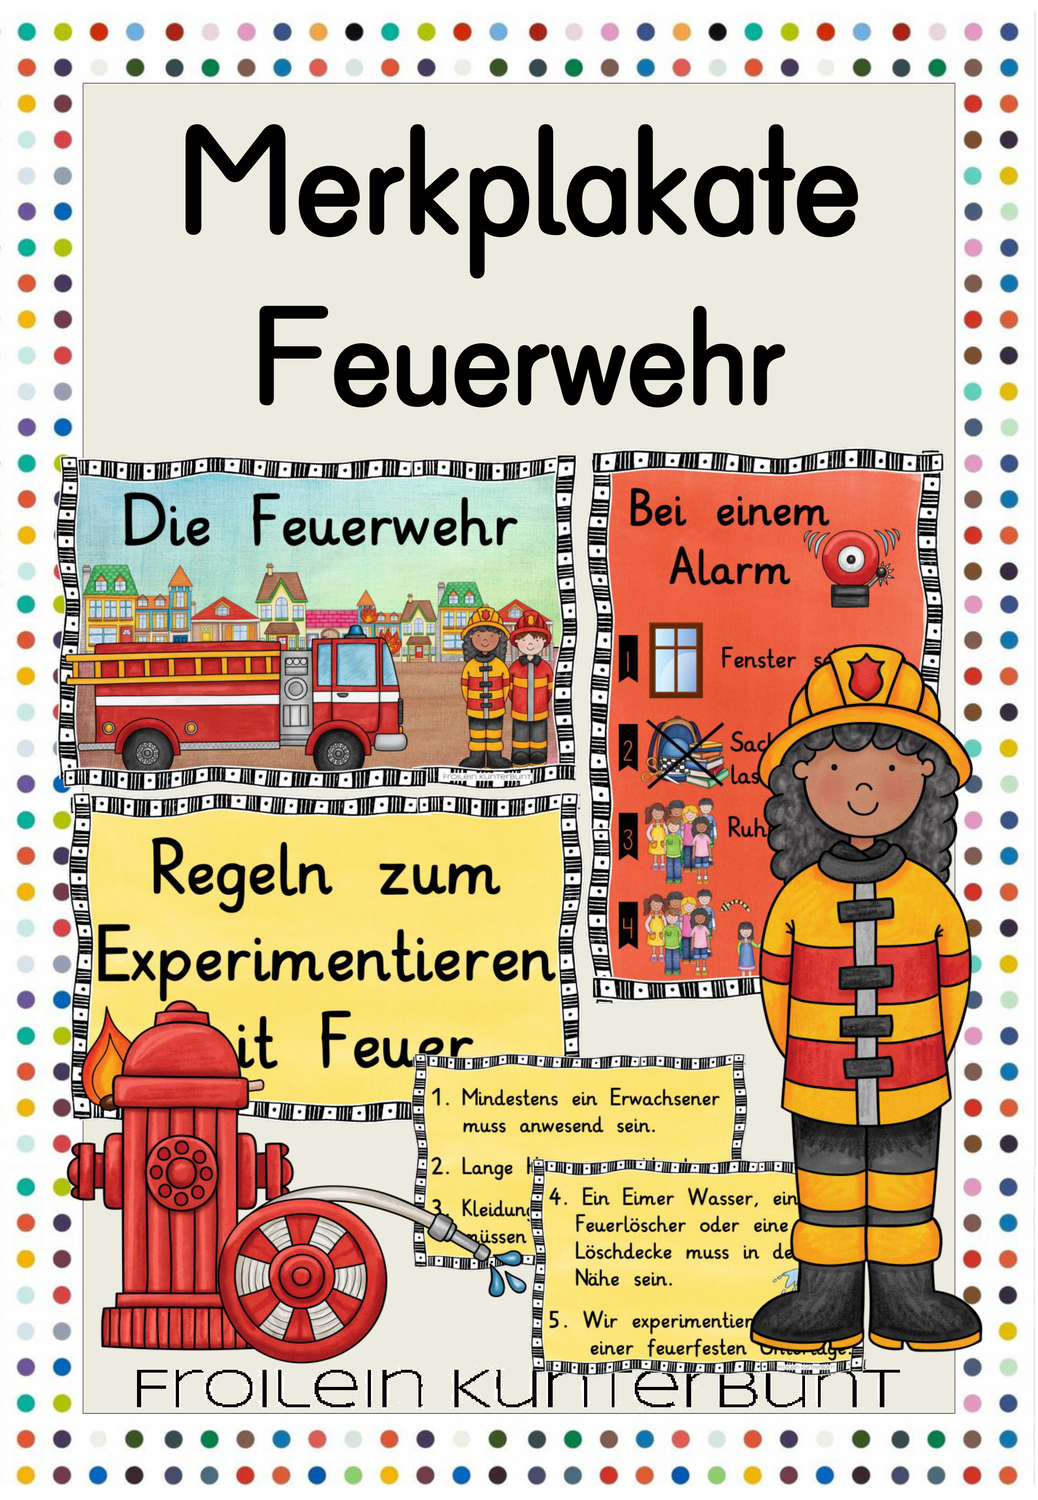 Merkplakate Feuerwehr Unterrichtsmaterial Im Fach Sachunterricht Plakat Feuerwehr Unterrichtsmaterial